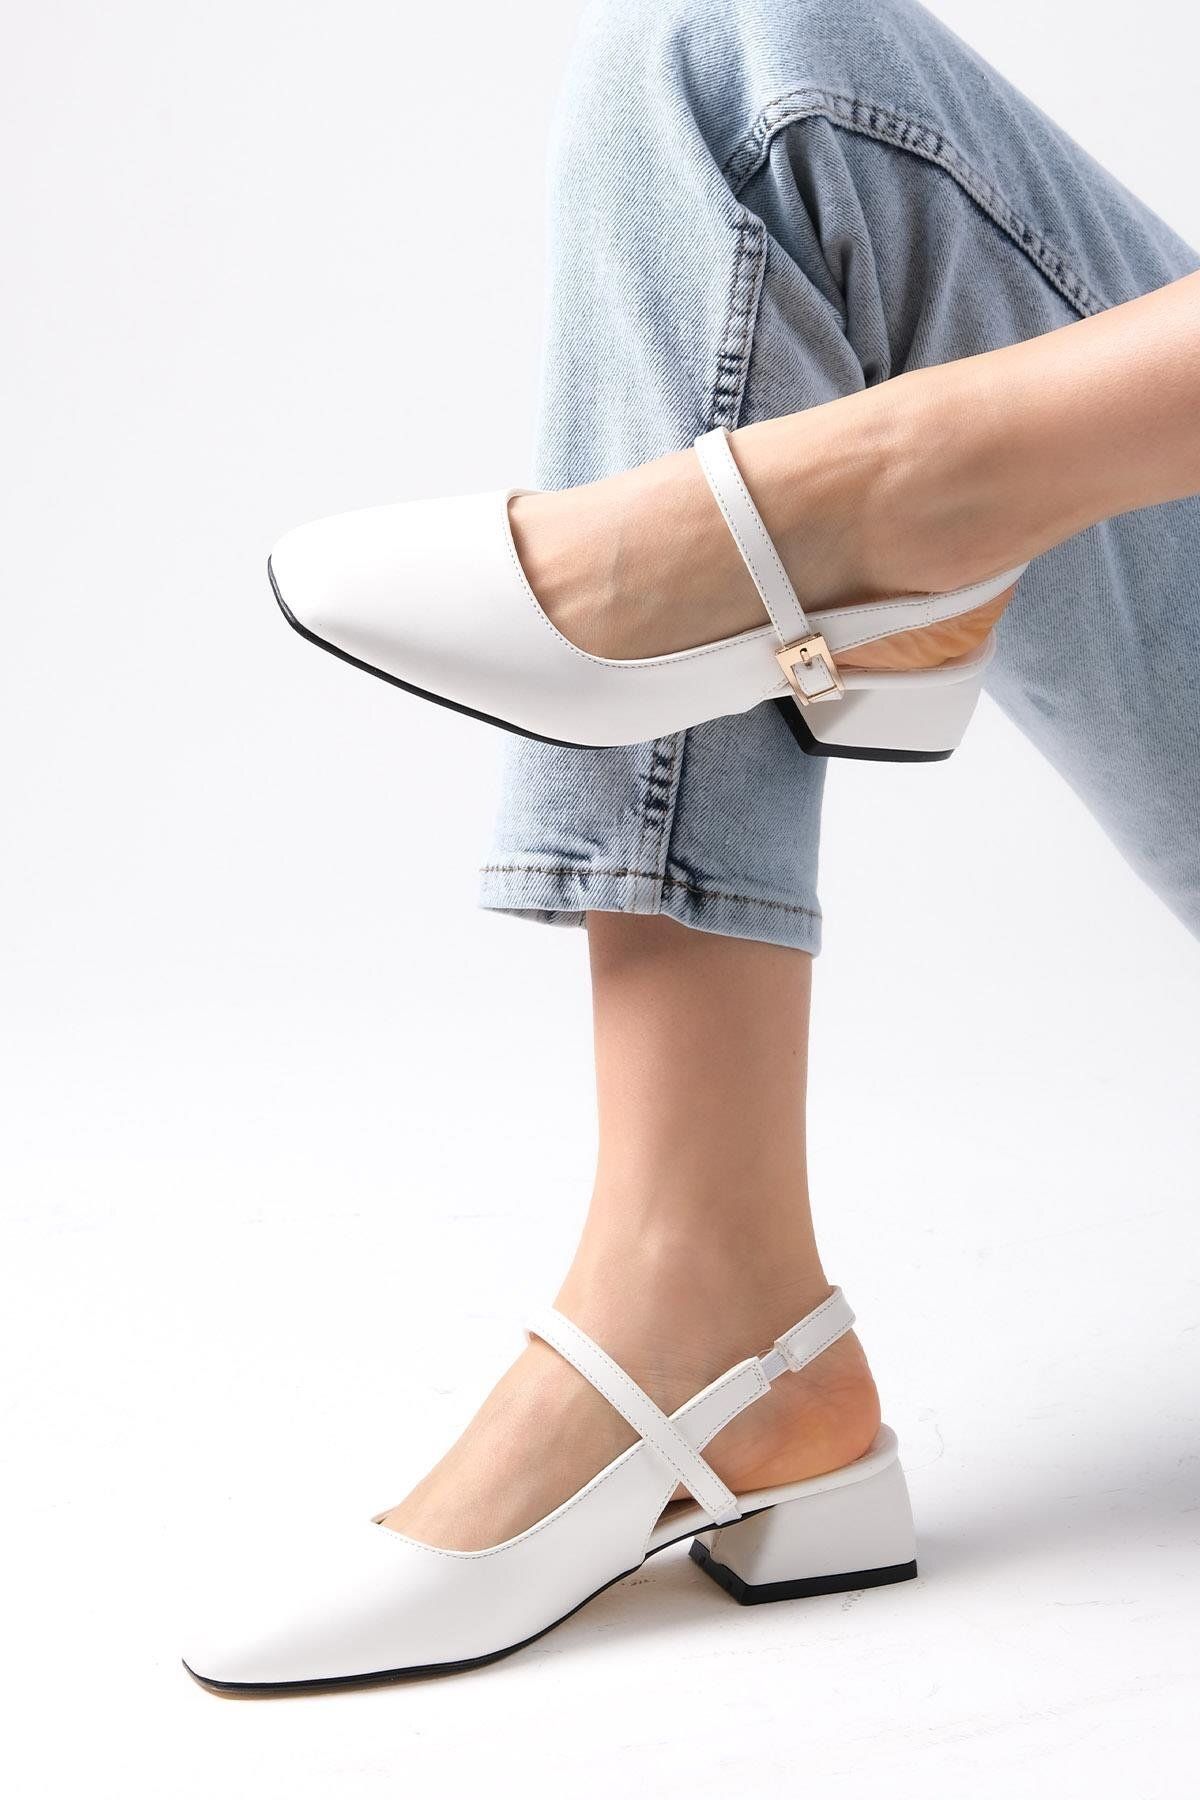 Mio Gusto Ella Beyaz Renk Arkası Açık Kadın Kısa Topuklu Ayakkabı